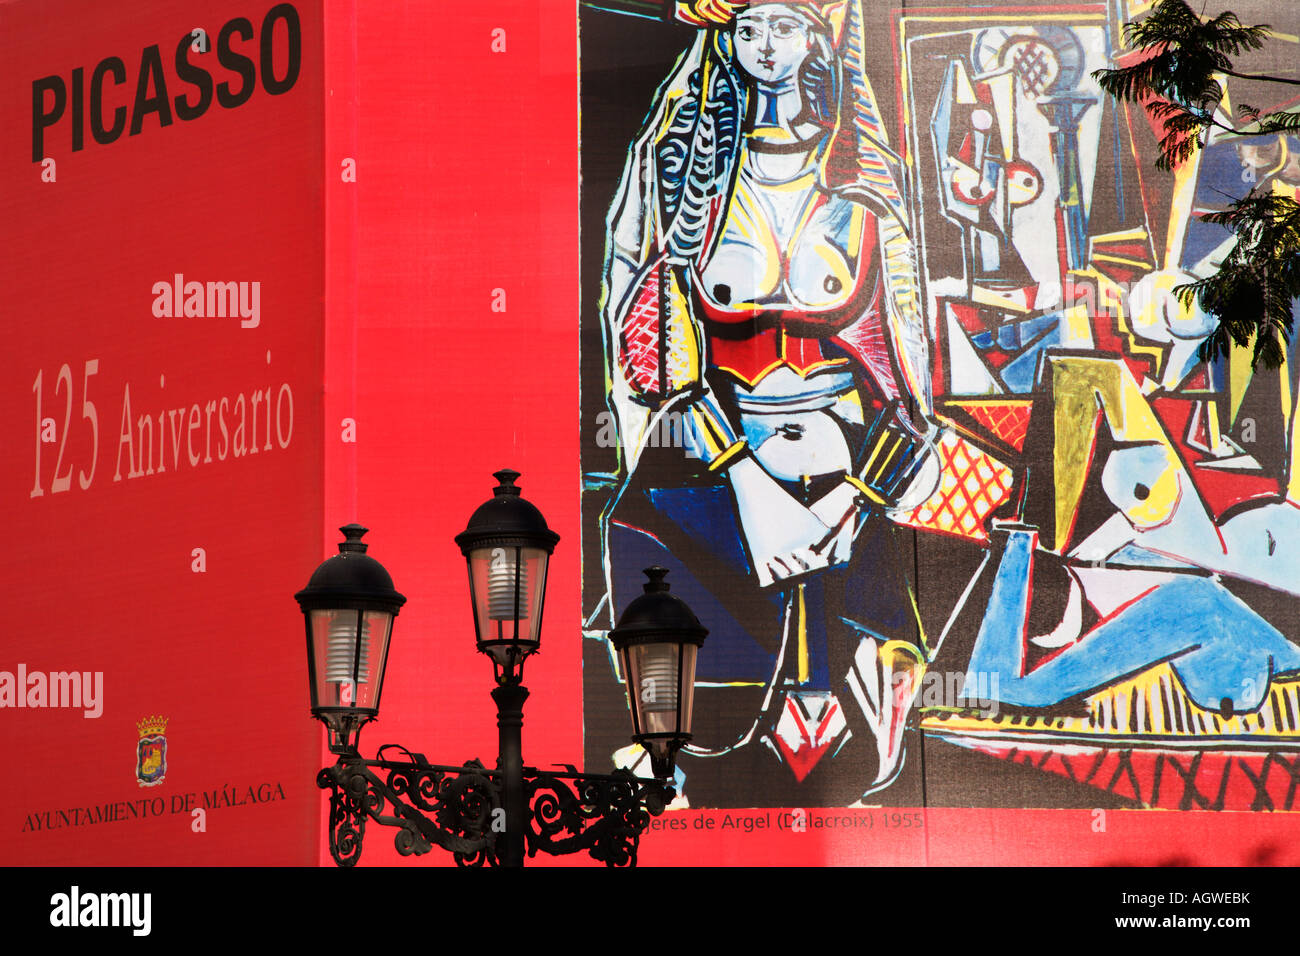 Picasso centoventicinquesimo anniversario murale in Plaza de la Merced Malaga Spa Foto Stock